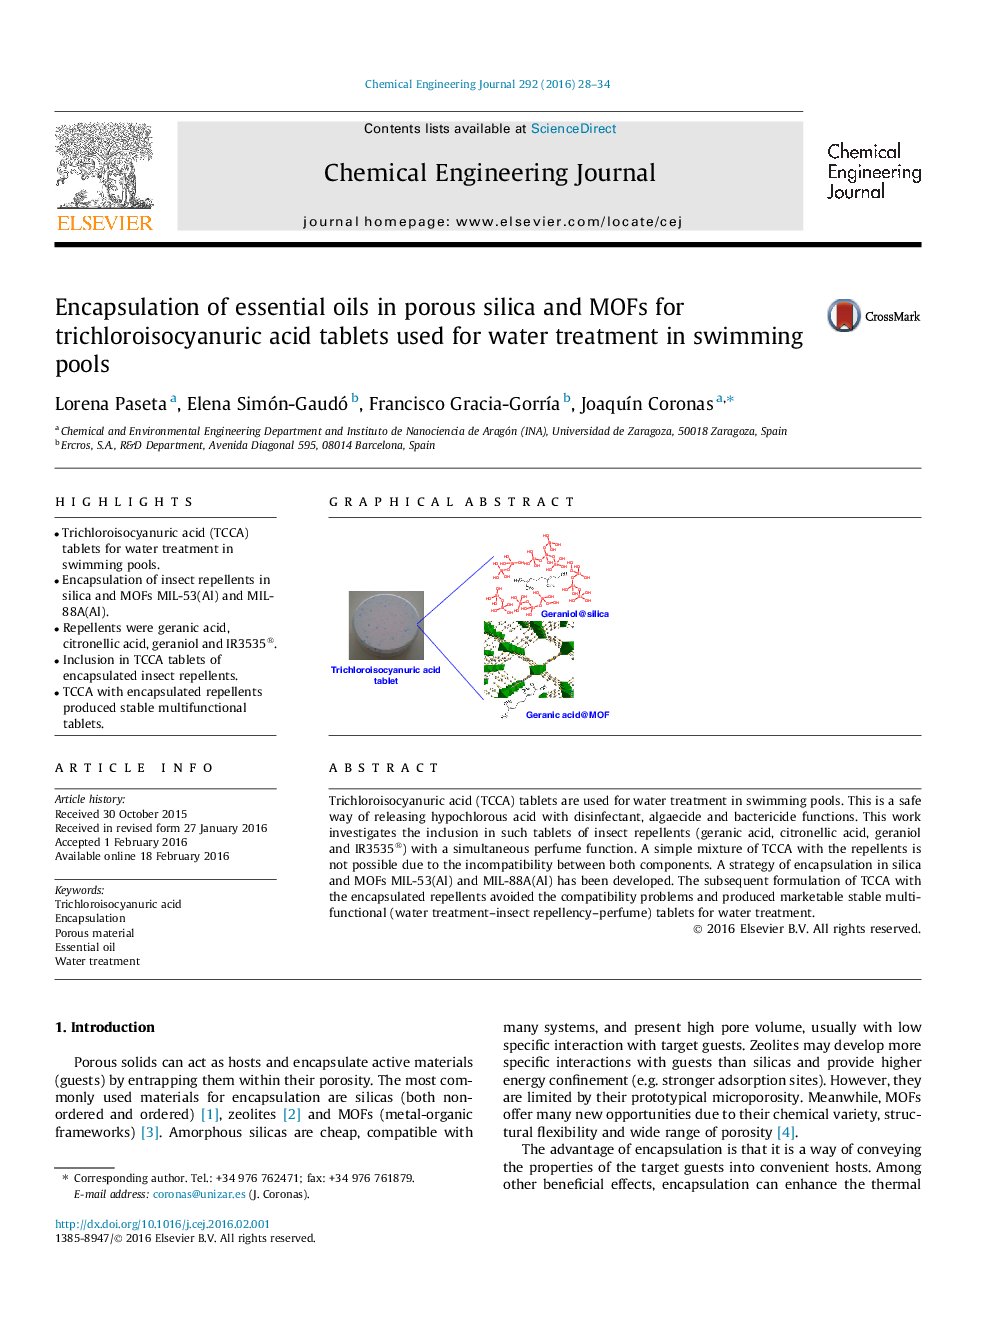 کپسوله کردن روغن های اسانس موجود در سیلیس متخلخل و MOFs برای قرص های اسید تری کلرویزوسیانوریک مورد استفاده برای تصفیه آب در استخرهای شنا